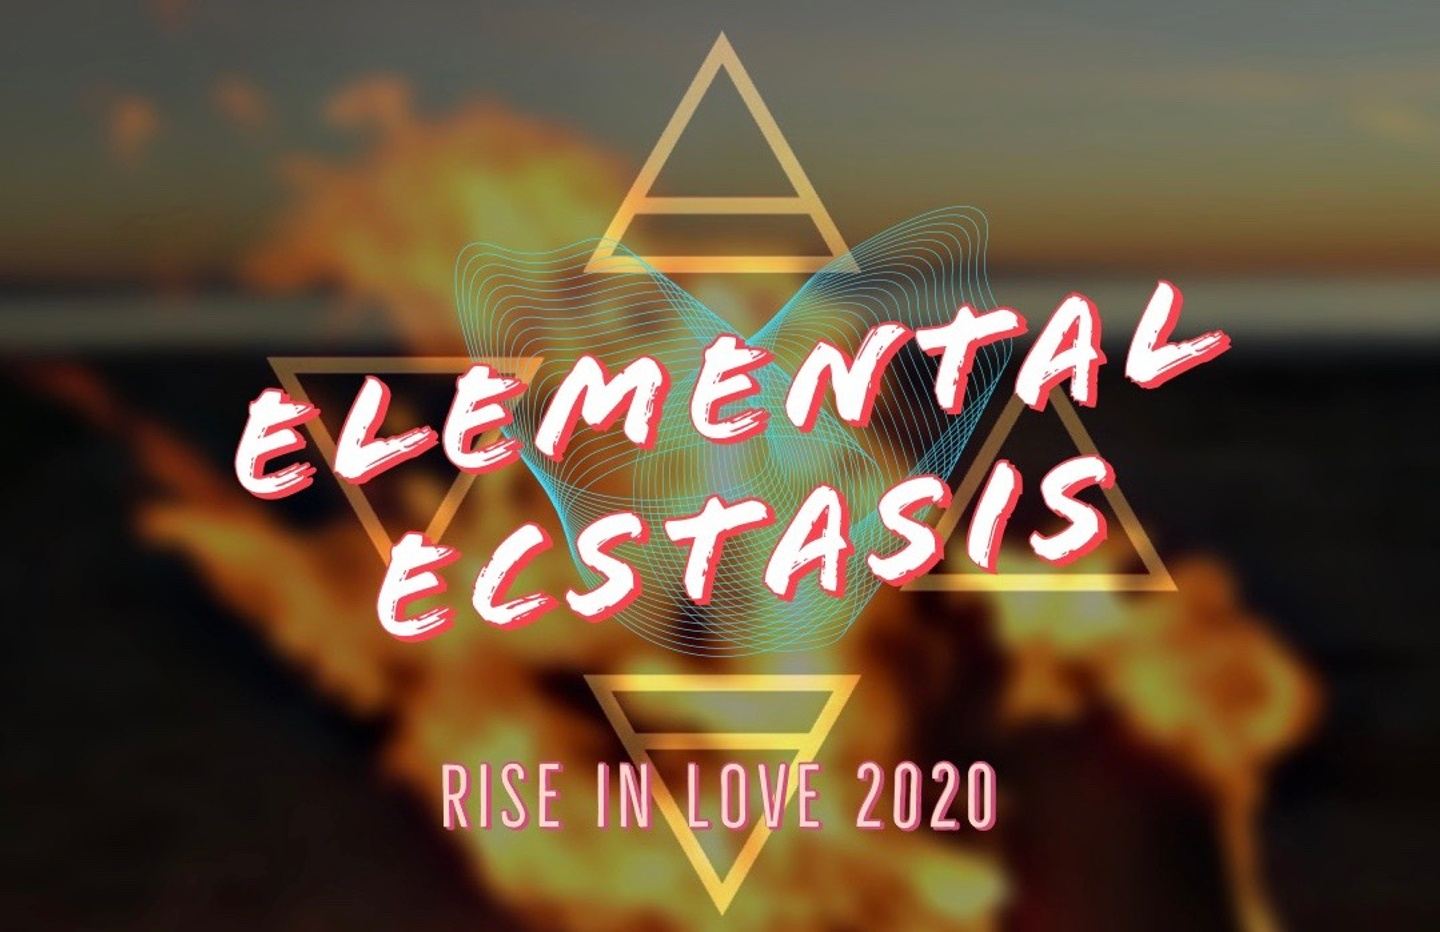 Elemental Ecstasis Retreat